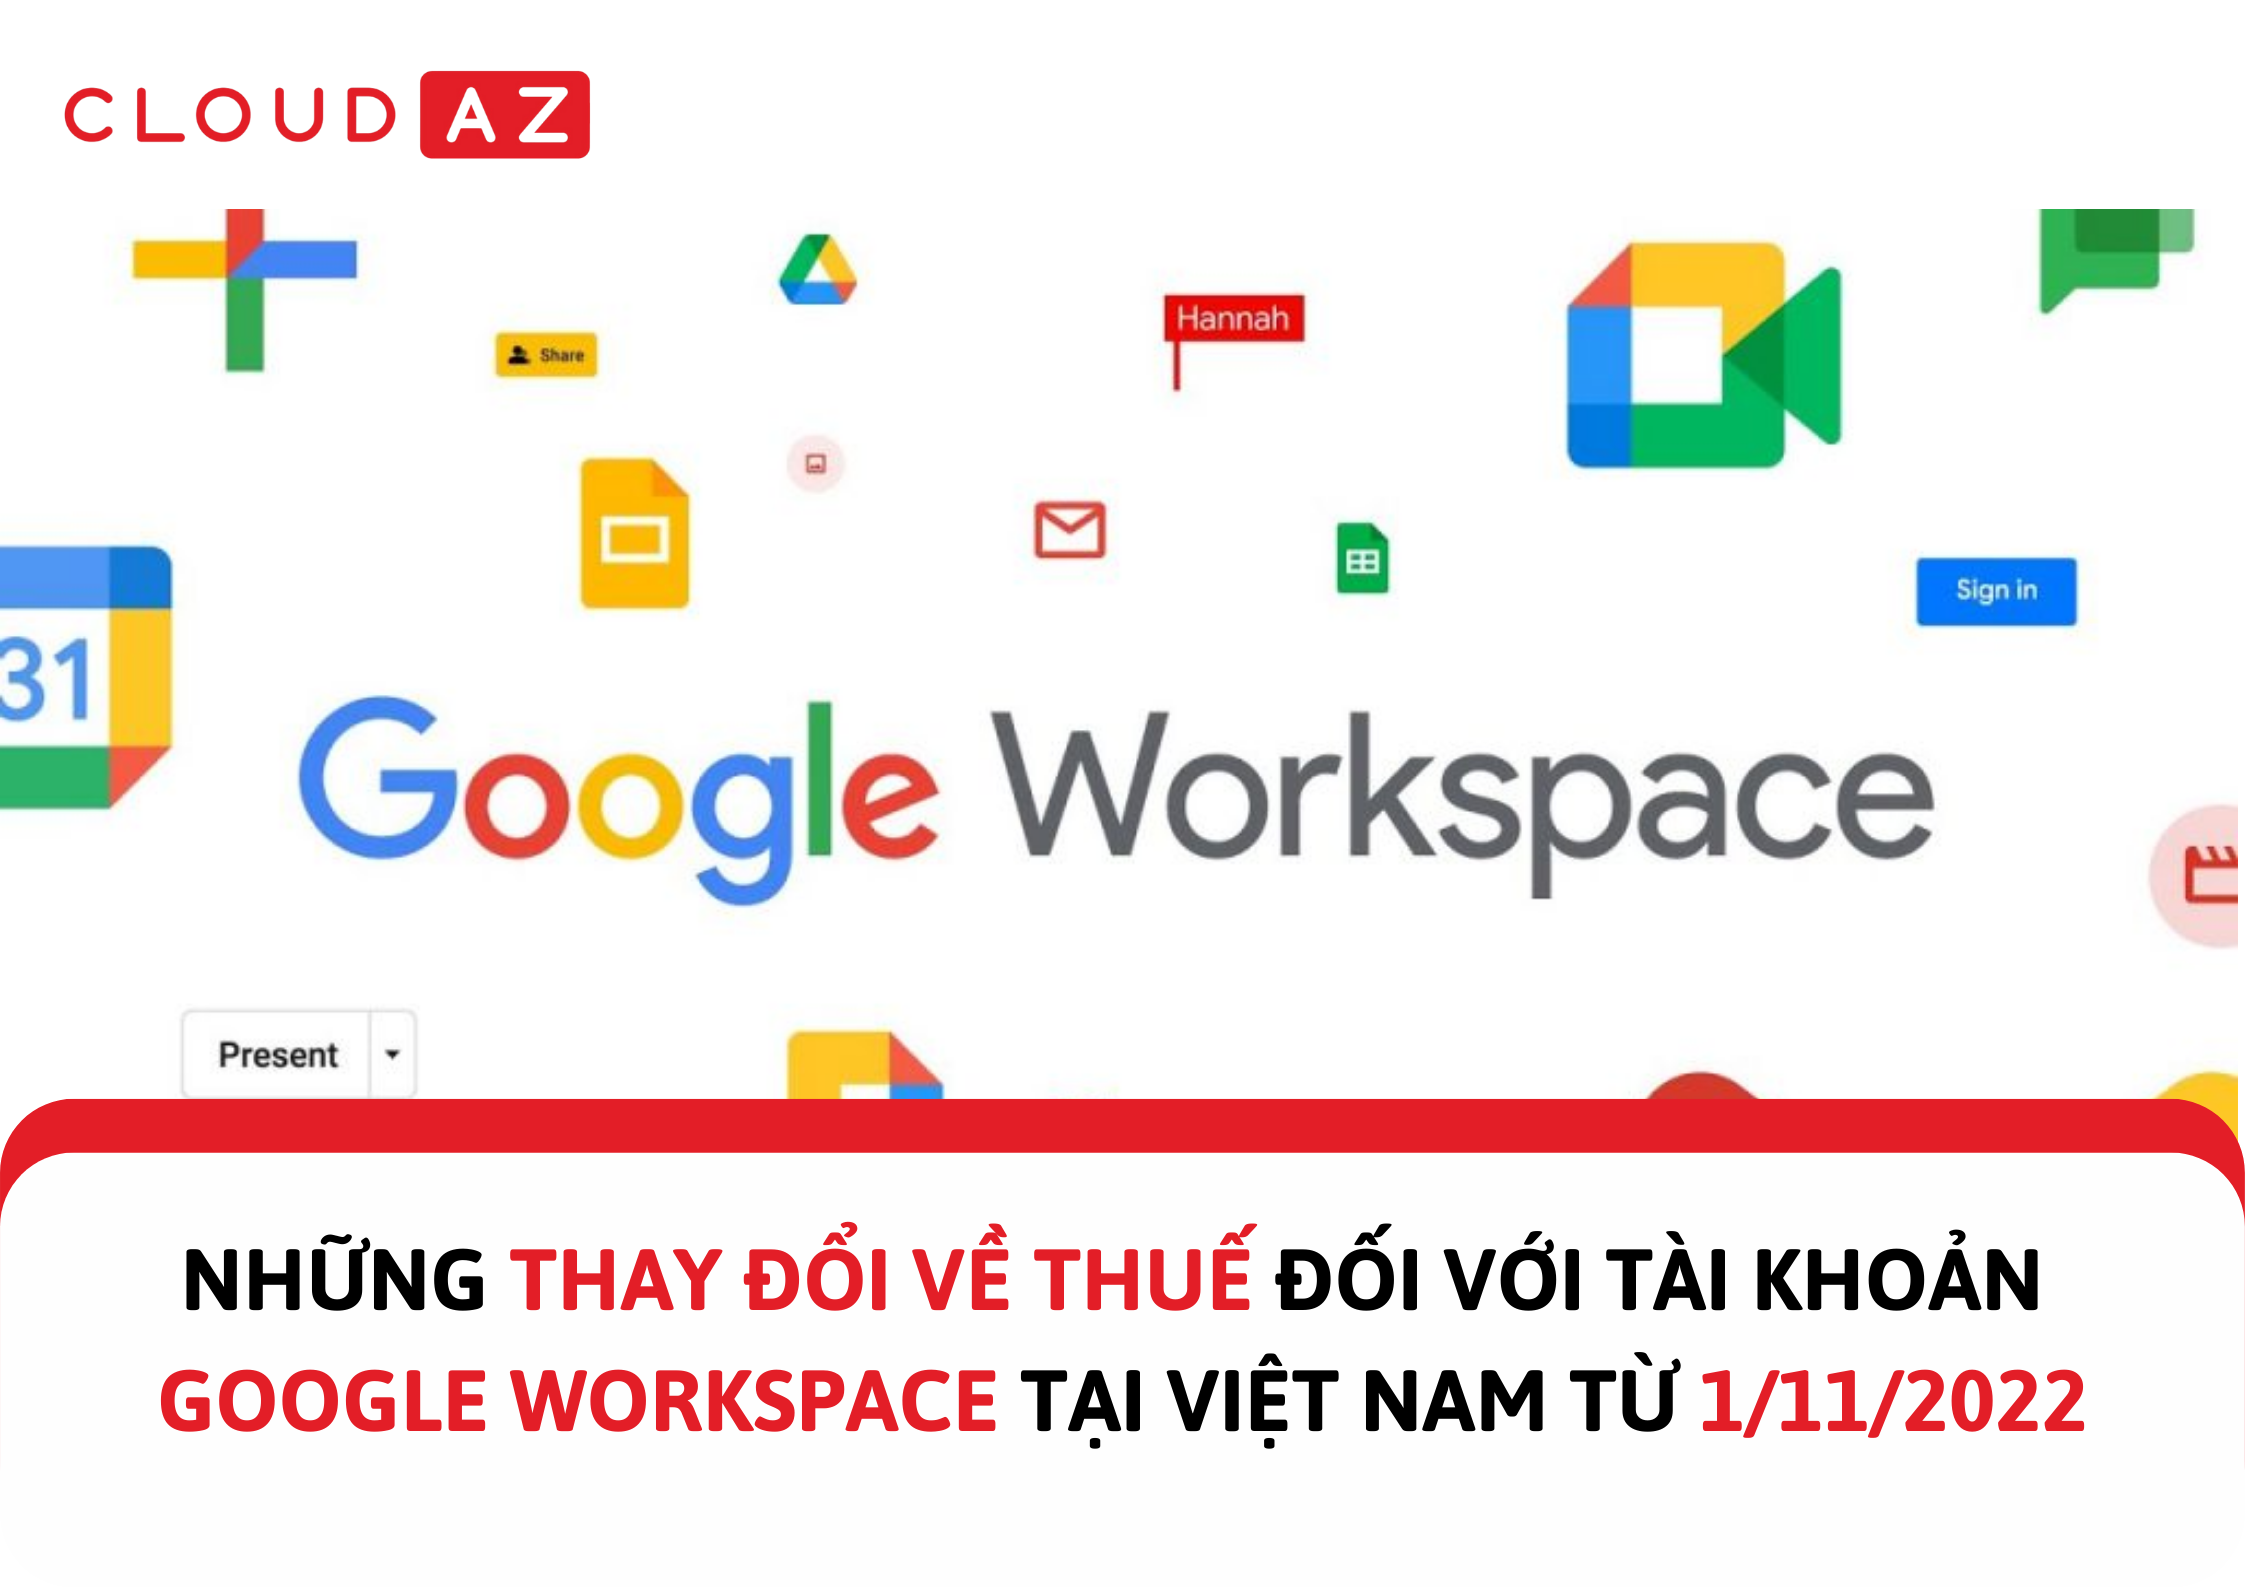 Lưu trữ Google Workspace: Không cần lo lắng về việc mất dữ liệu hoặc không thể truy cập các tài liệu quan trọng của bạn nữa. Hãy khám phá cách lưu trữ Google Workspace để đảm bảo sự an toàn cho tất cả các tài liệu của bạn!